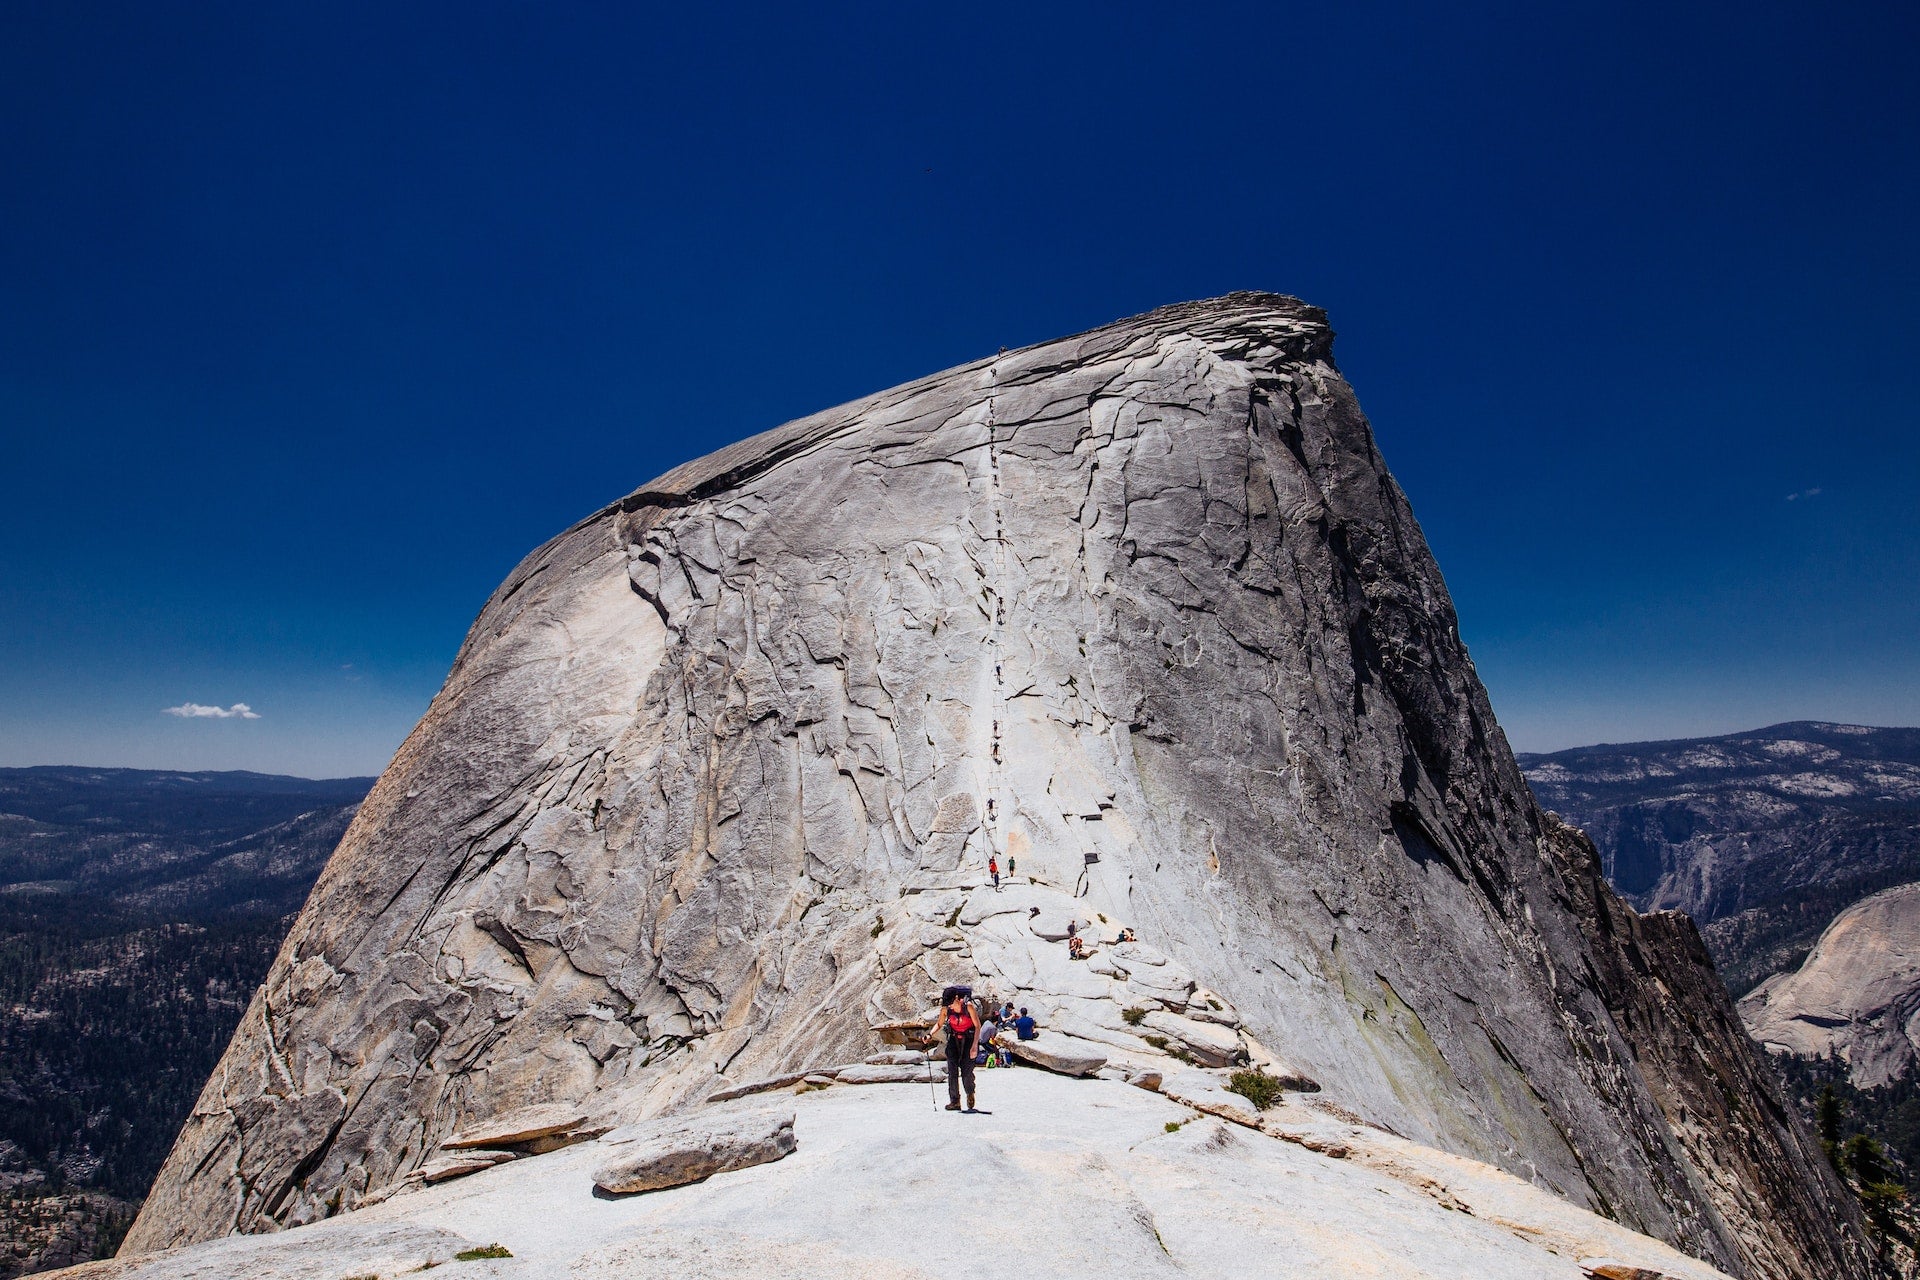 Conquistando a escalada definitiva no Yosemites Half Dome: meu triunfo sobre o medo e a dúvida